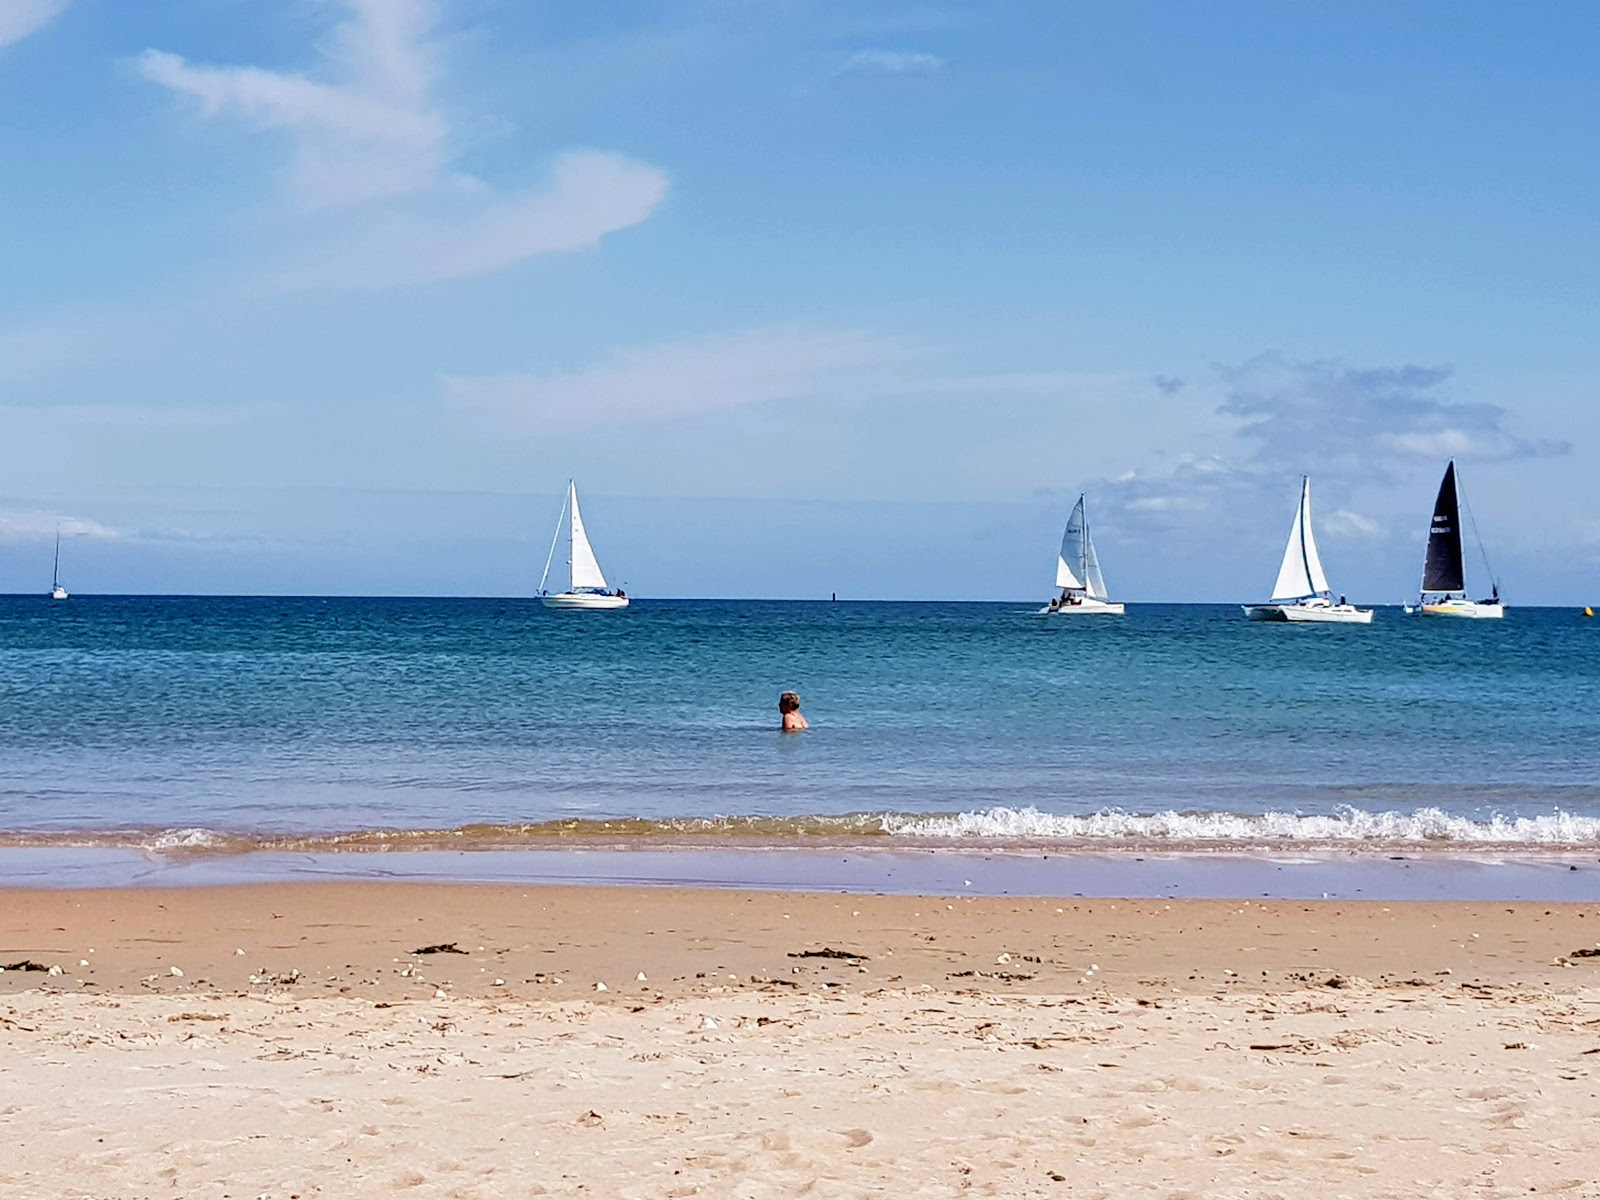 Gorey Beach'in fotoğrafı - rahatlamayı sevenler arasında popüler bir yer